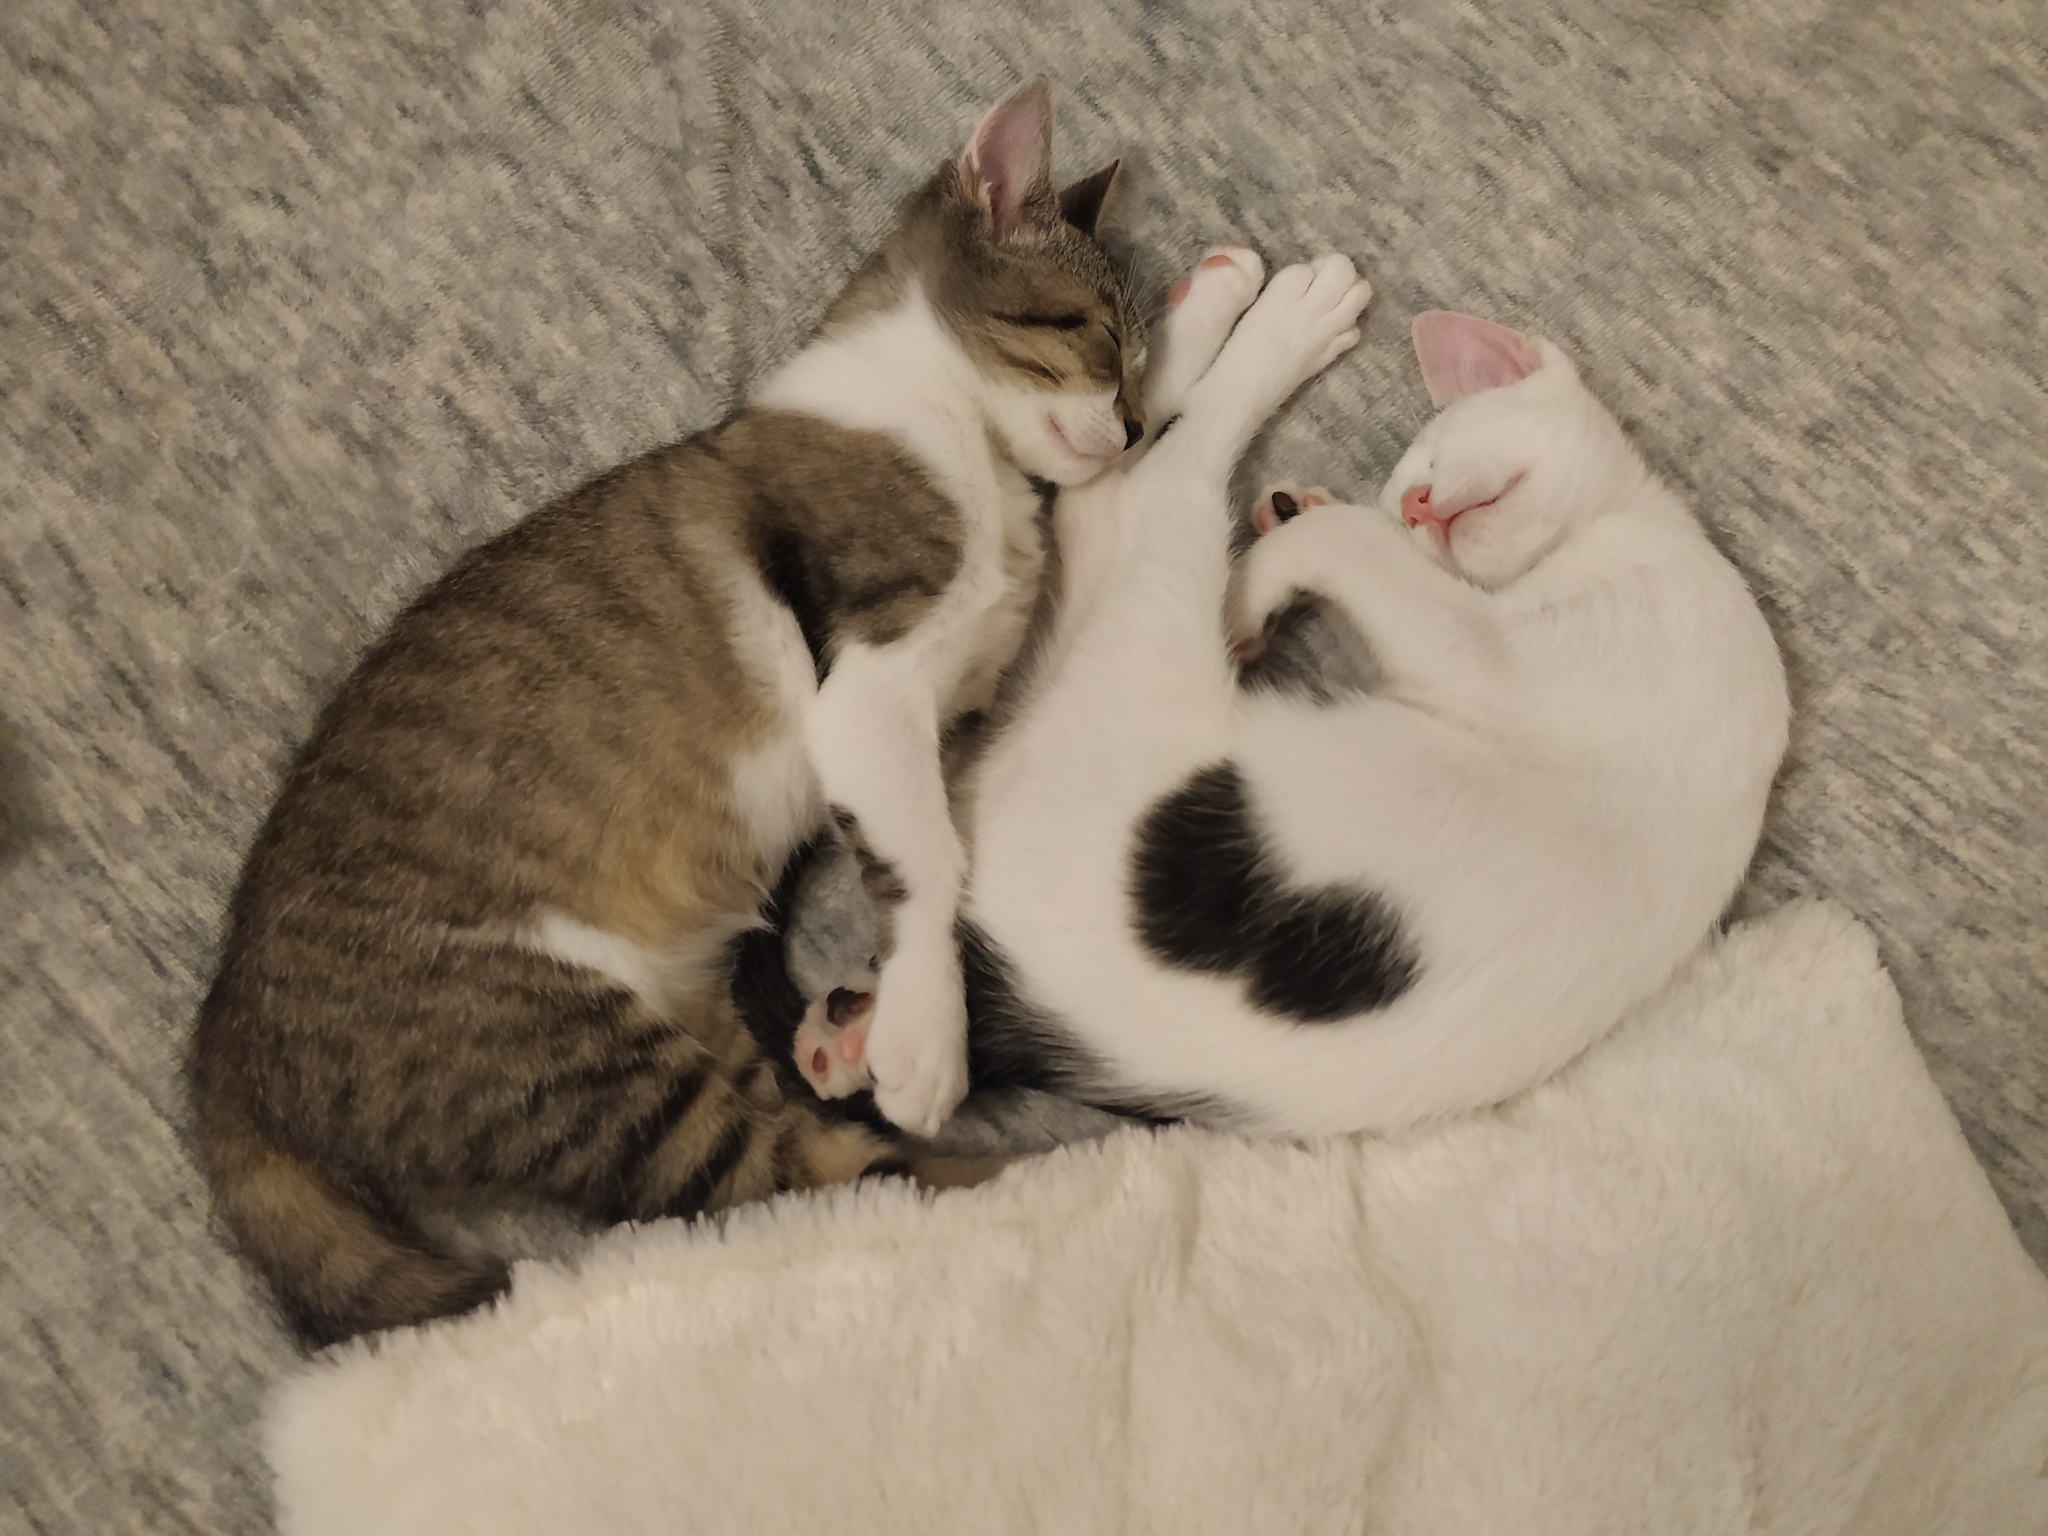 Сестра заставила брата лизать киску. Спящий брат. Шлёпа кот детеныш. Синяя братишка кот и розовая сестричка кошечка.